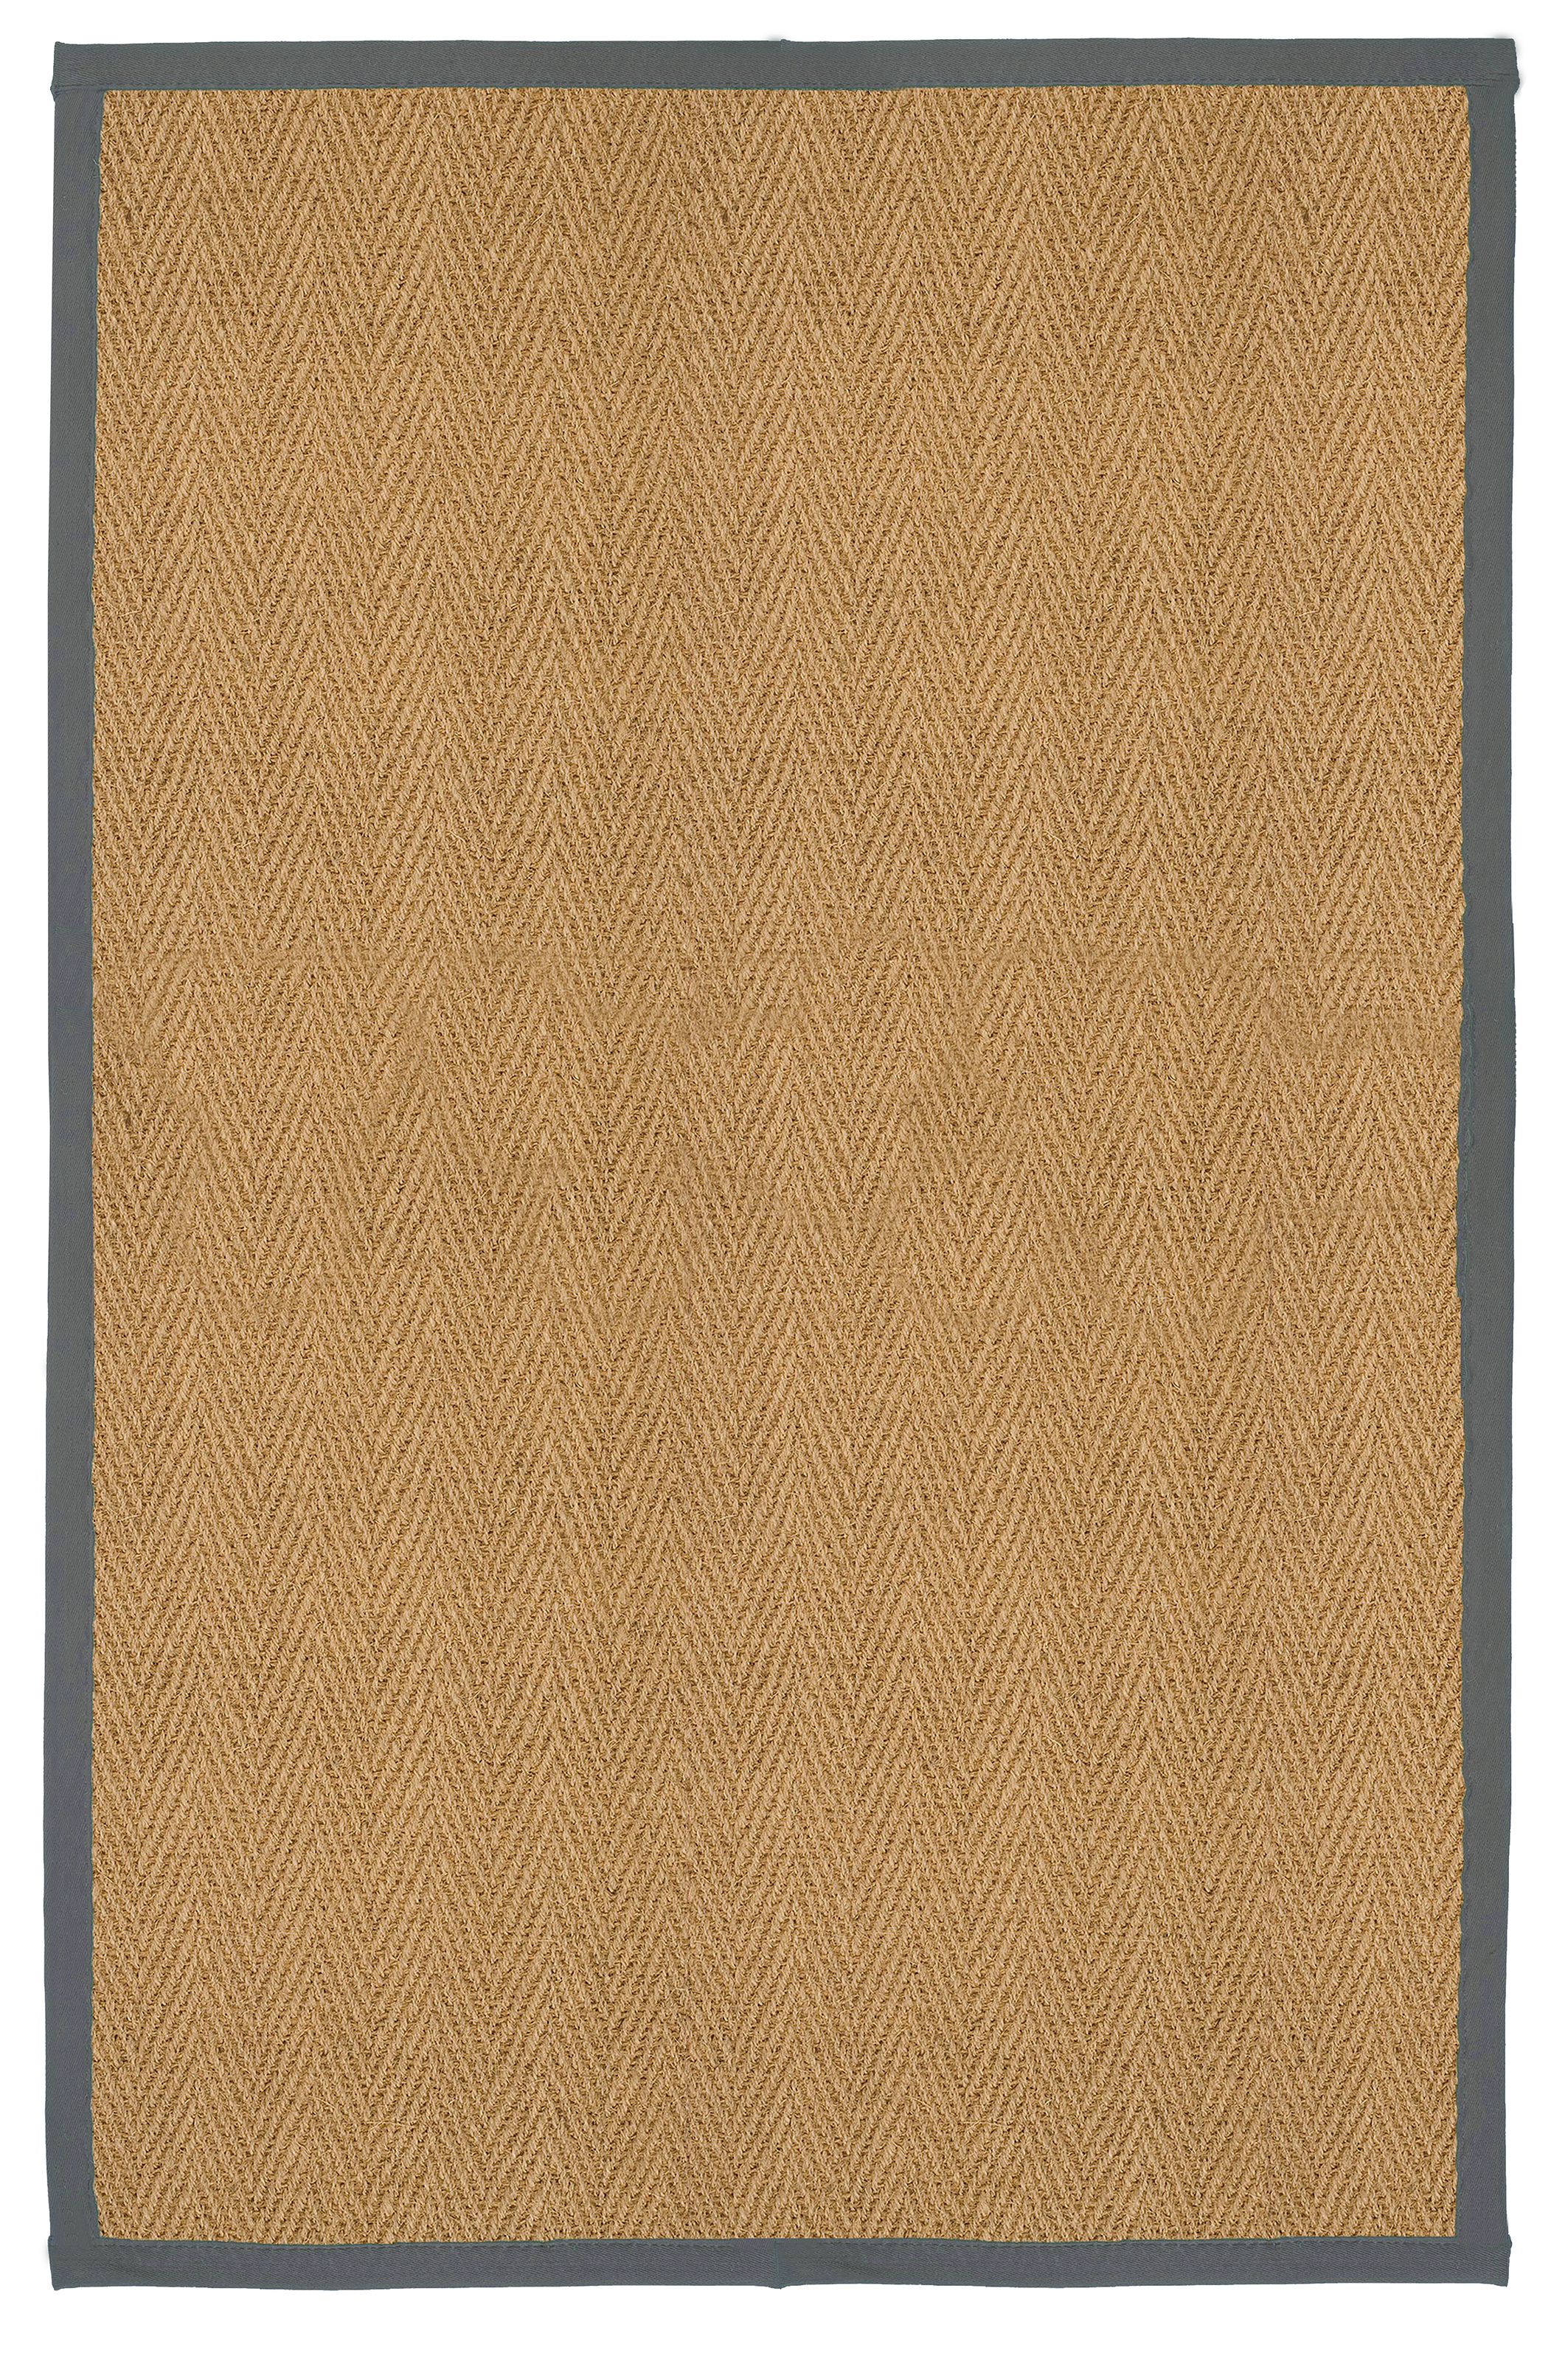 Herringbone weave Brown, grey Rug 150cmx100cm